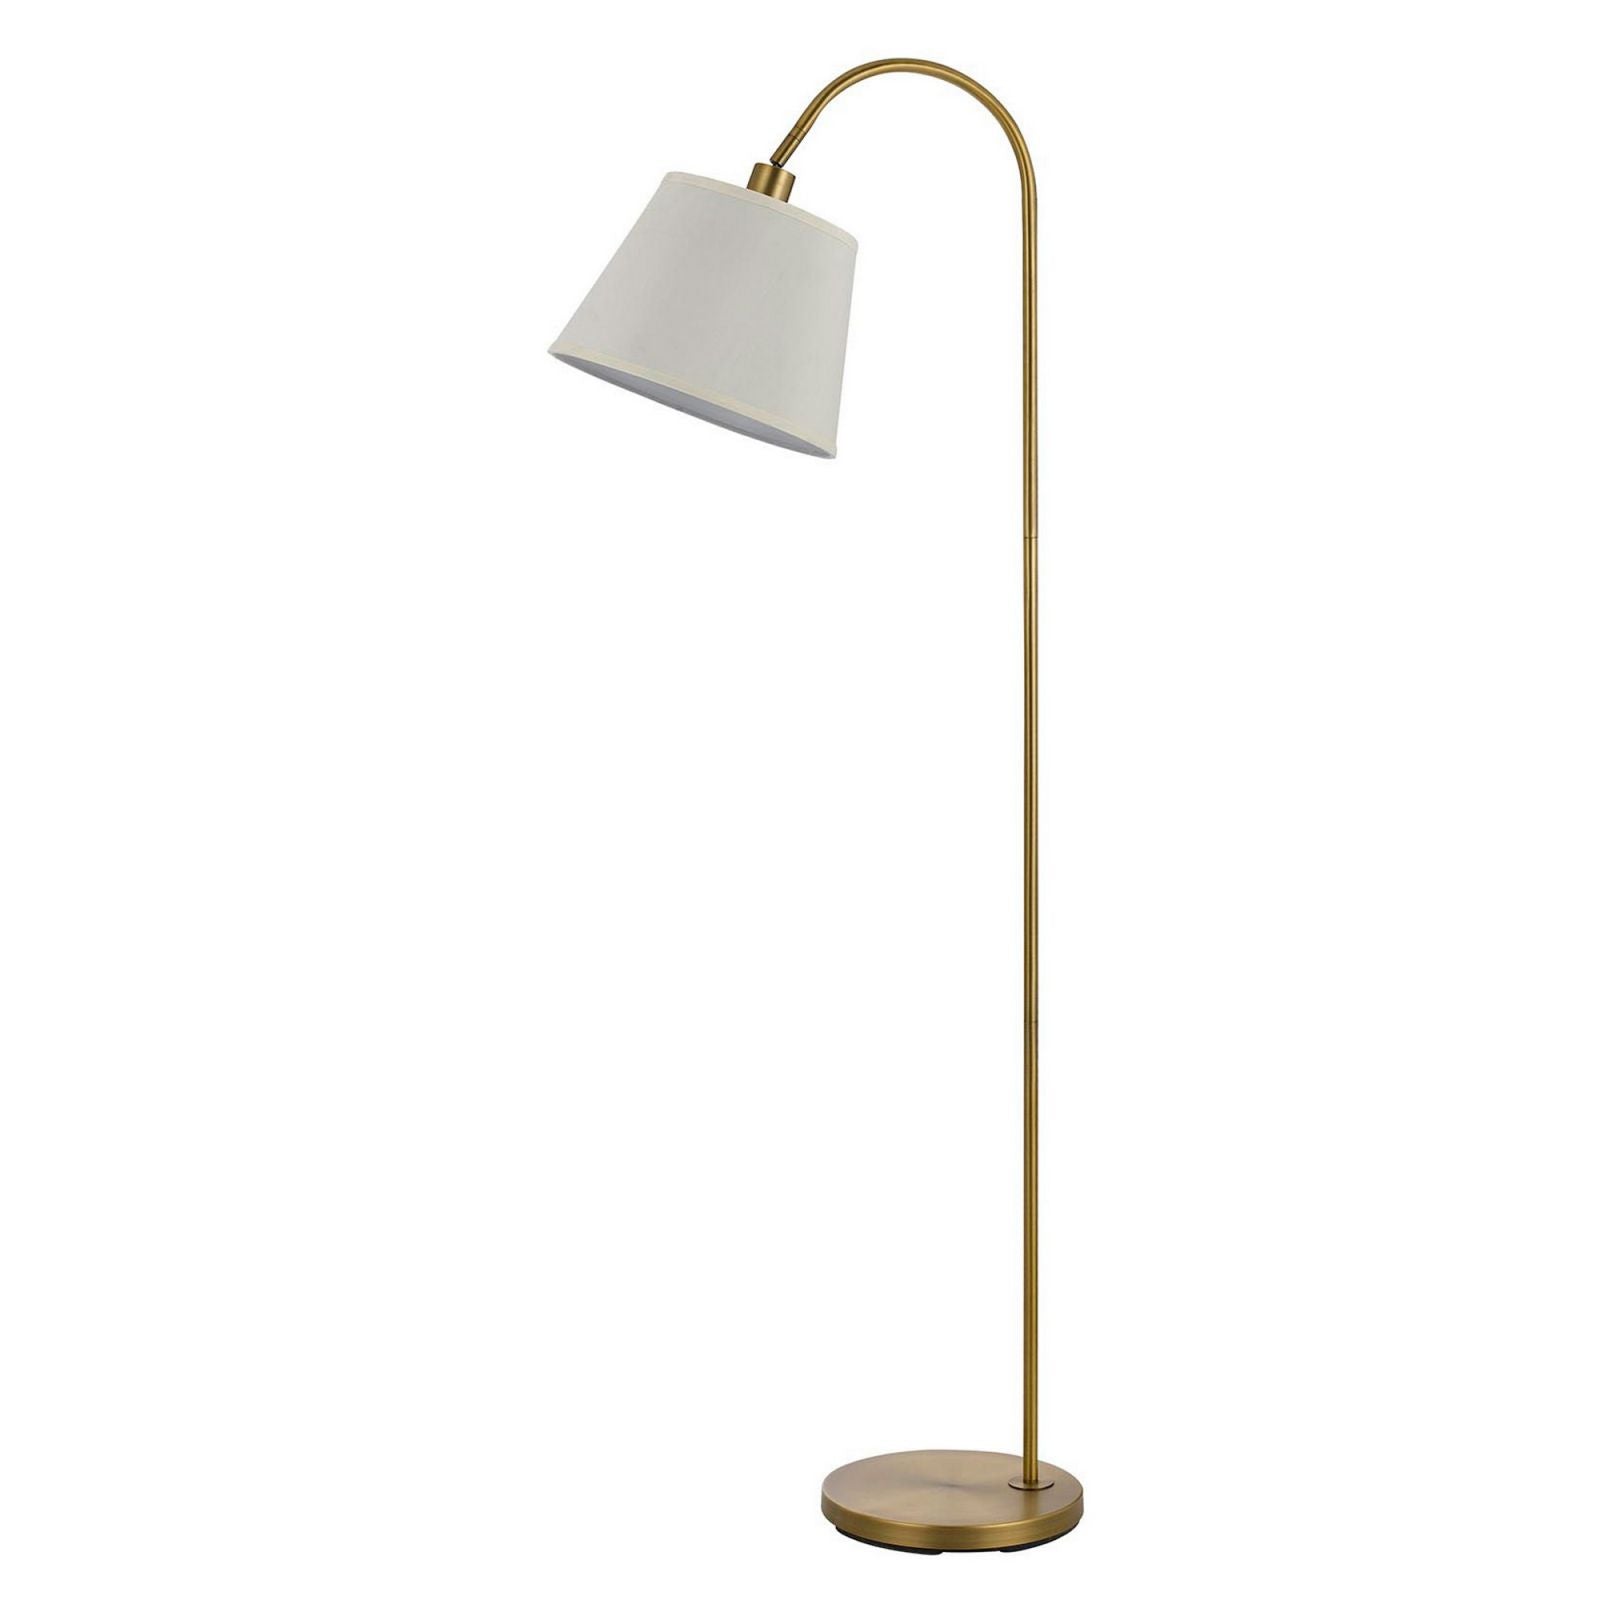 60 Watt Metal Floor Lamp With Gooseneck Shape And Stable Base, Gold By Benzara | Floor Lamps |  Modishstore 